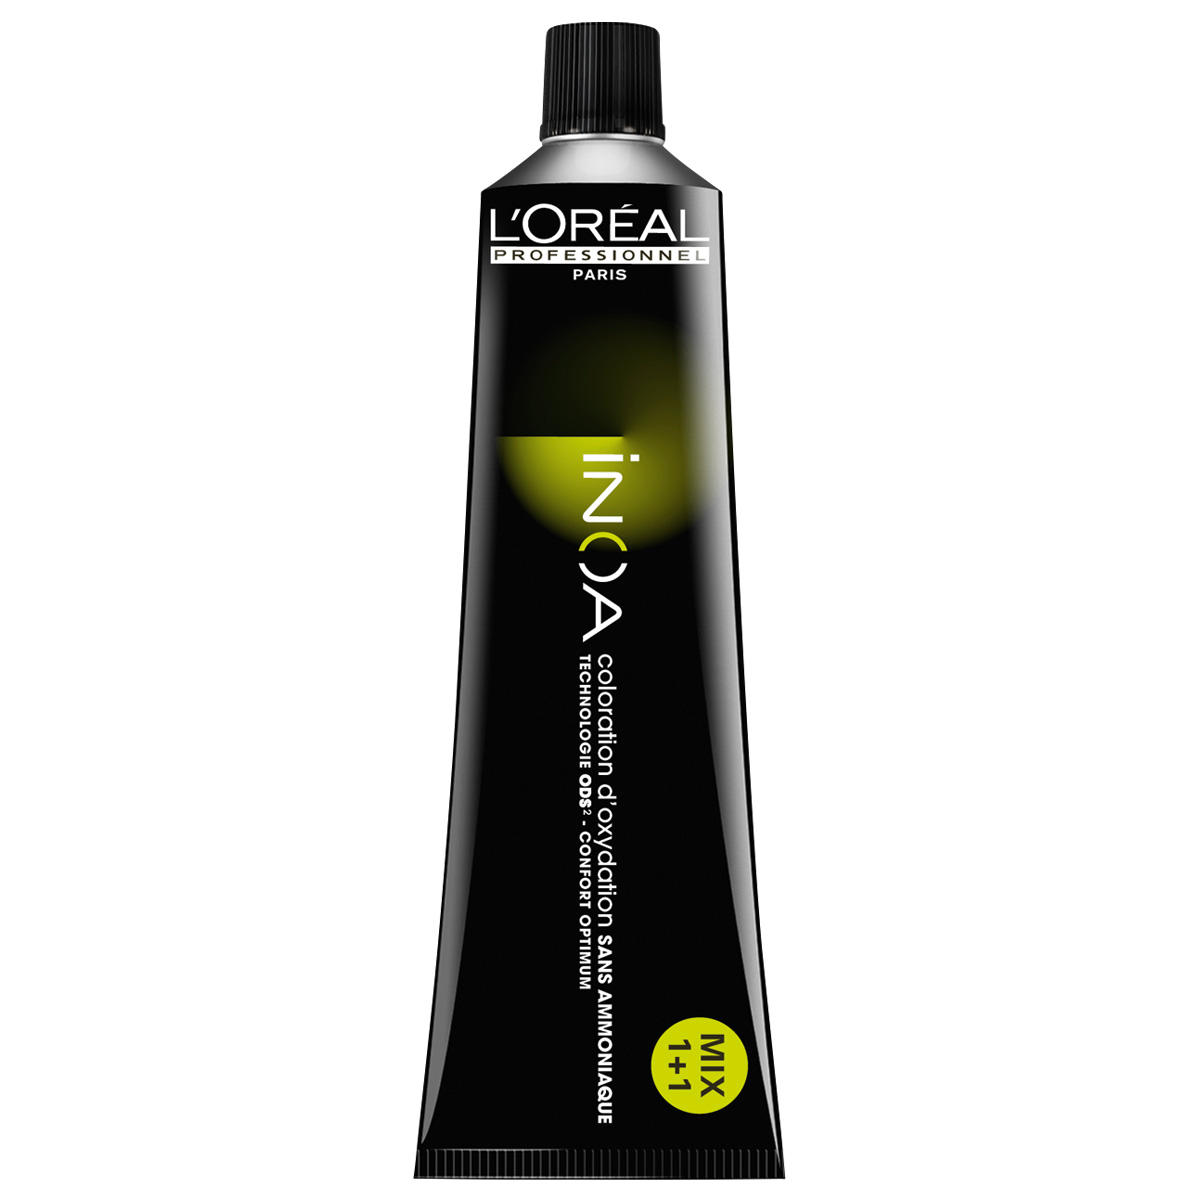 L'Oréal Professionnel Paris Coloration 7,35 Rubio Medio Caoba, tubo 60 ml - 1